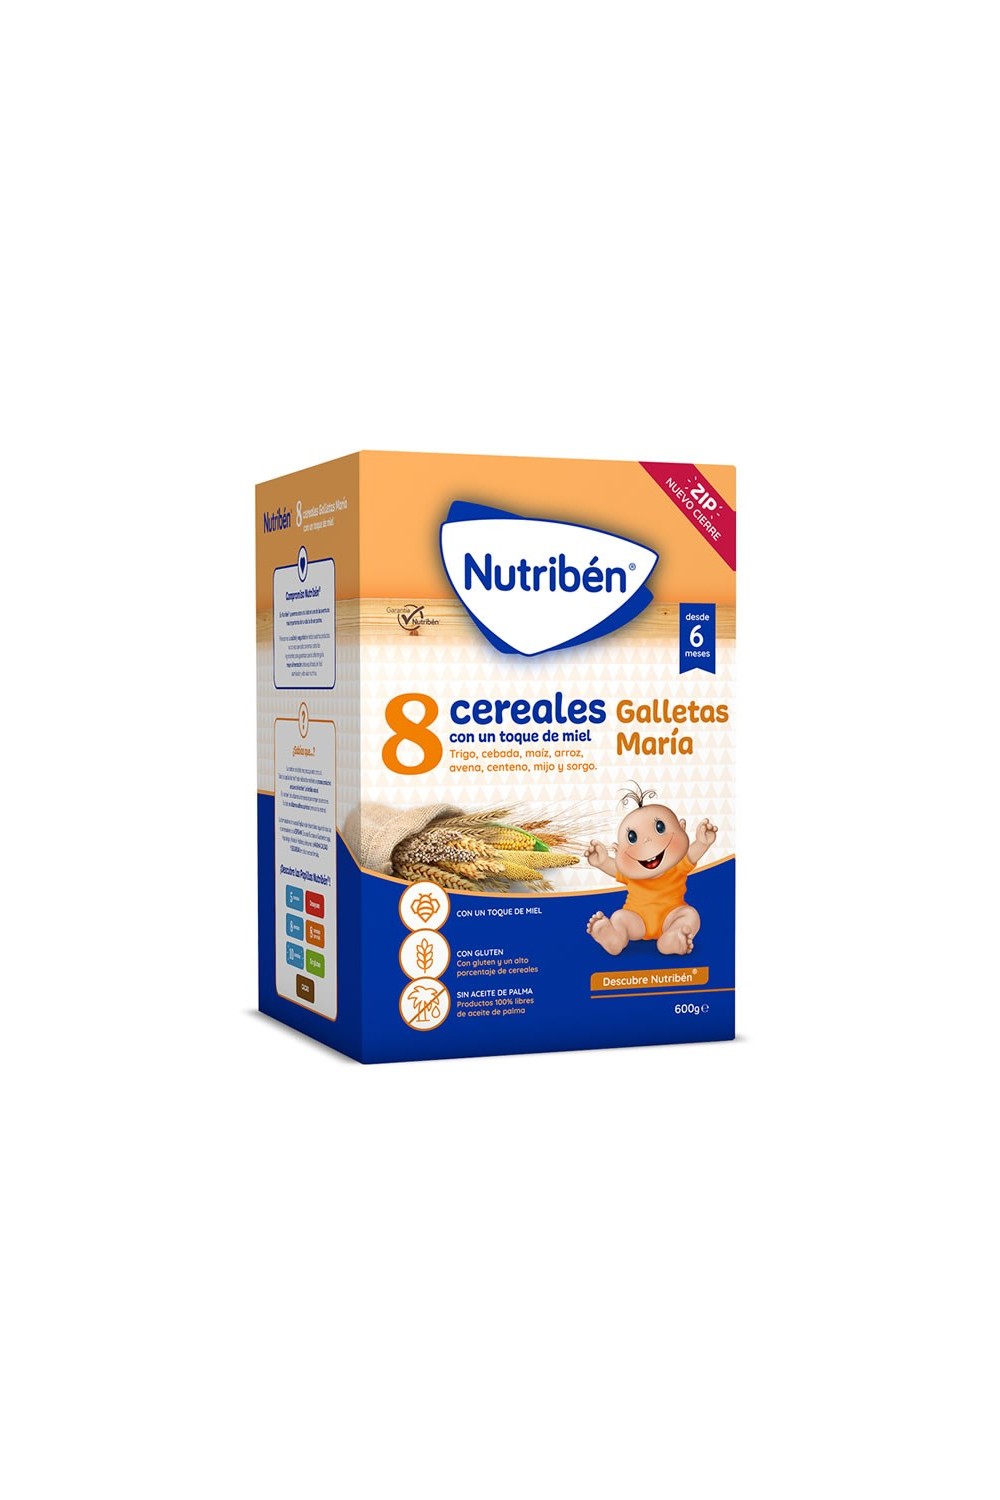 Nutriben 8 Cereals Honey Biscuits 600g